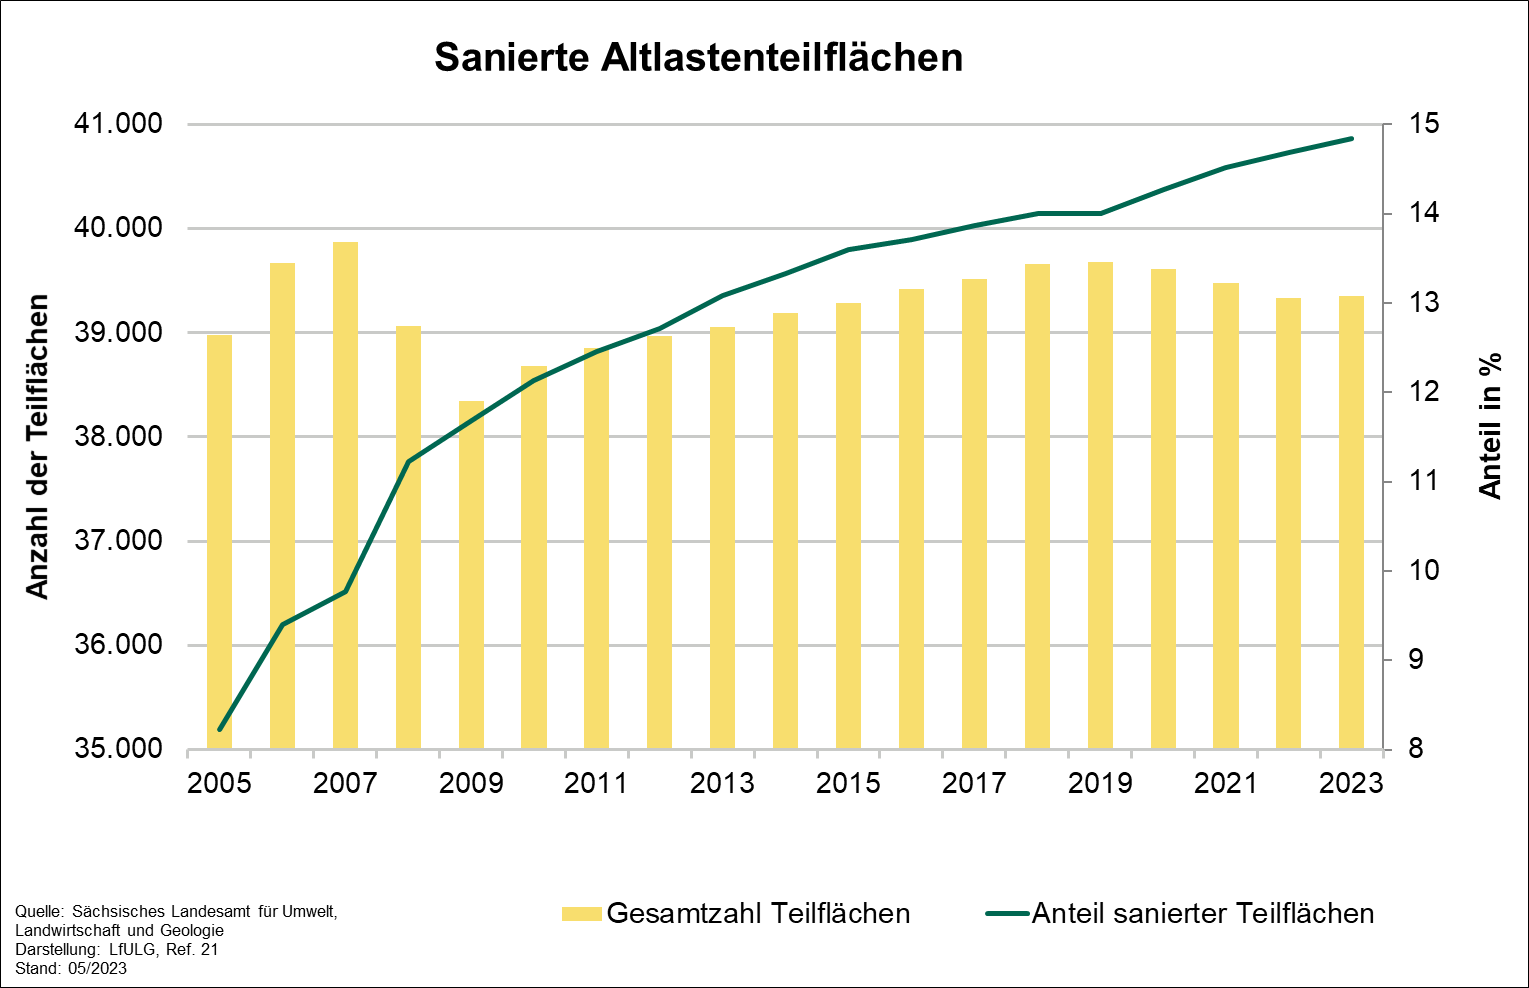 Die Grafik zeigt die Entwicklung des Indikators sanierte Altlastenteilflächen für die Jahre 2005 bis 2023. Der Parameter Anteil sanierter Altlastenteilflächen stieg über den gesamten Zeitraum kontinuierlich bis auf 14,8 Prozent im Jahr 2023 an.